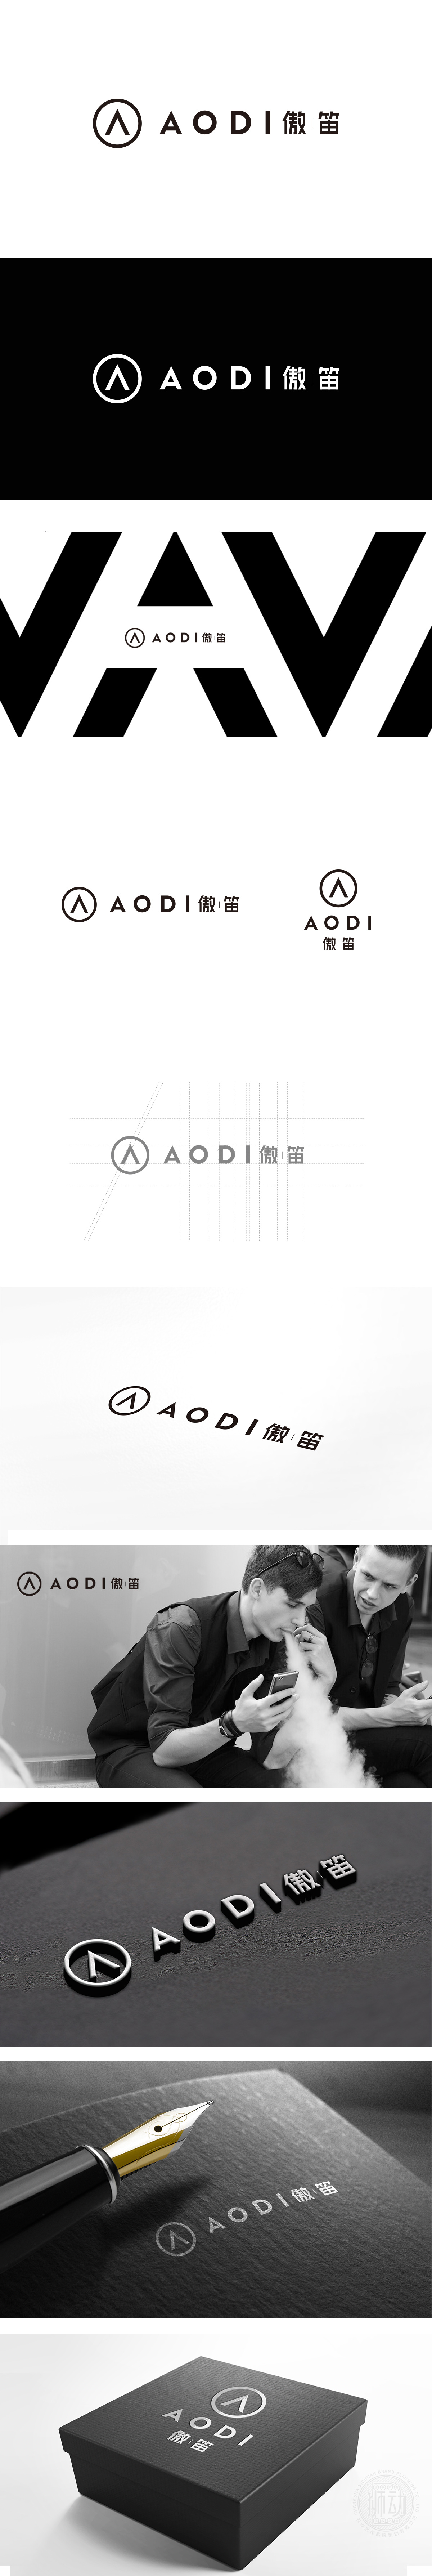 傲笛 AODI 电子/家电产品 LOGO设计